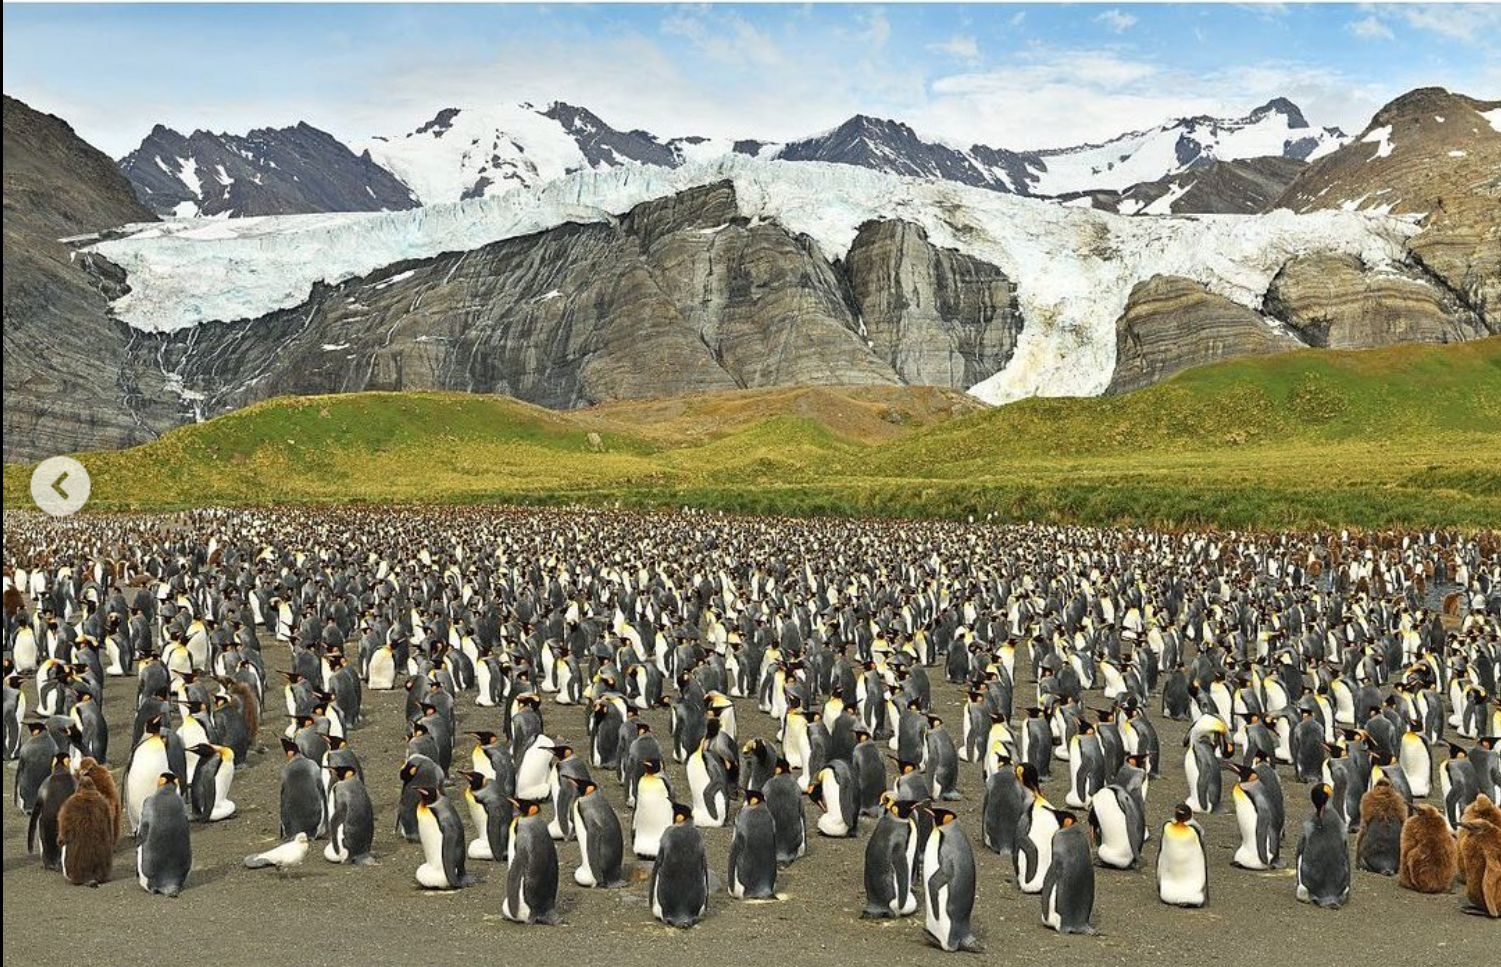 Сенсация. Впервые в мире в объектив попал желтый пингвин (ФОТО) 7